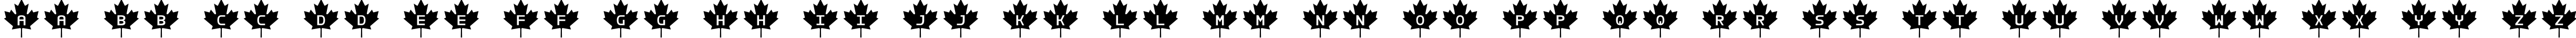 Пример написания английского алфавита шрифтом RCMP